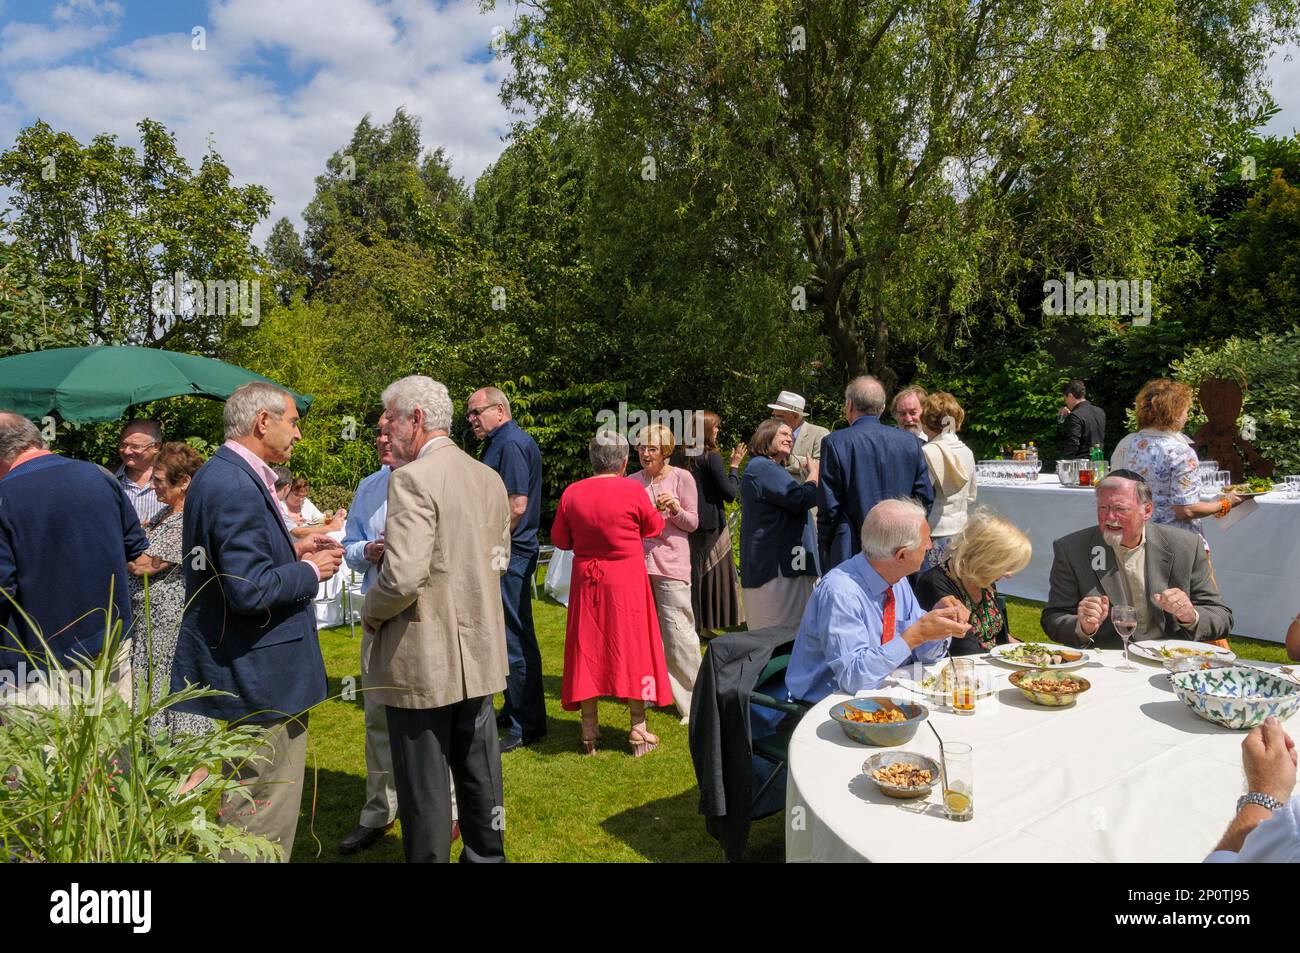 Gente de clase media socializando en una fiesta en el jardín, Londres, Inglaterra, Reino Unido Foto de stock